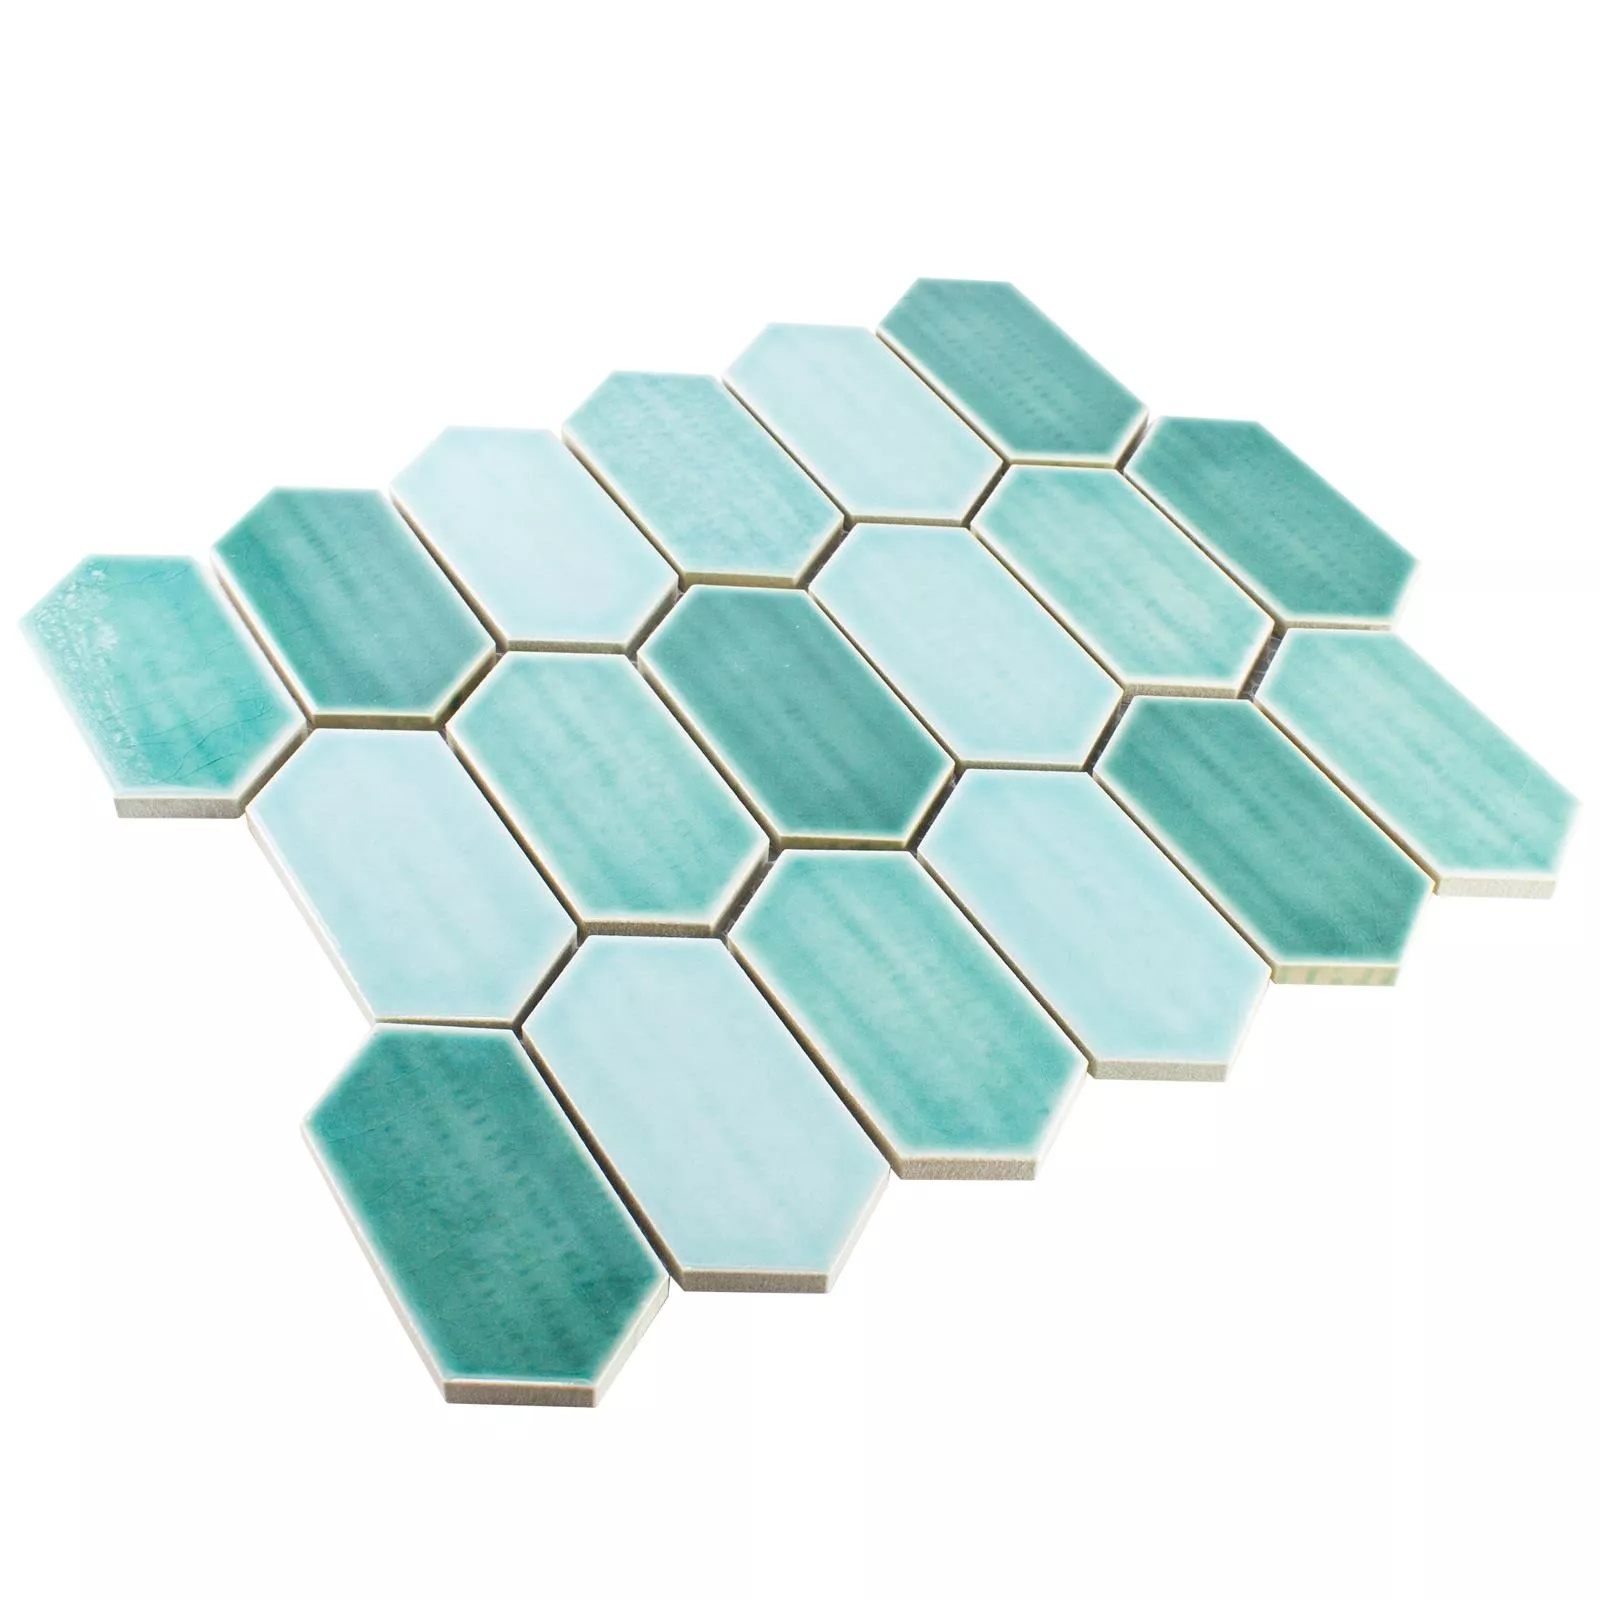 Sample Keramiek Mozaïektegel McCook Hexagon Lang Turquoise Groen